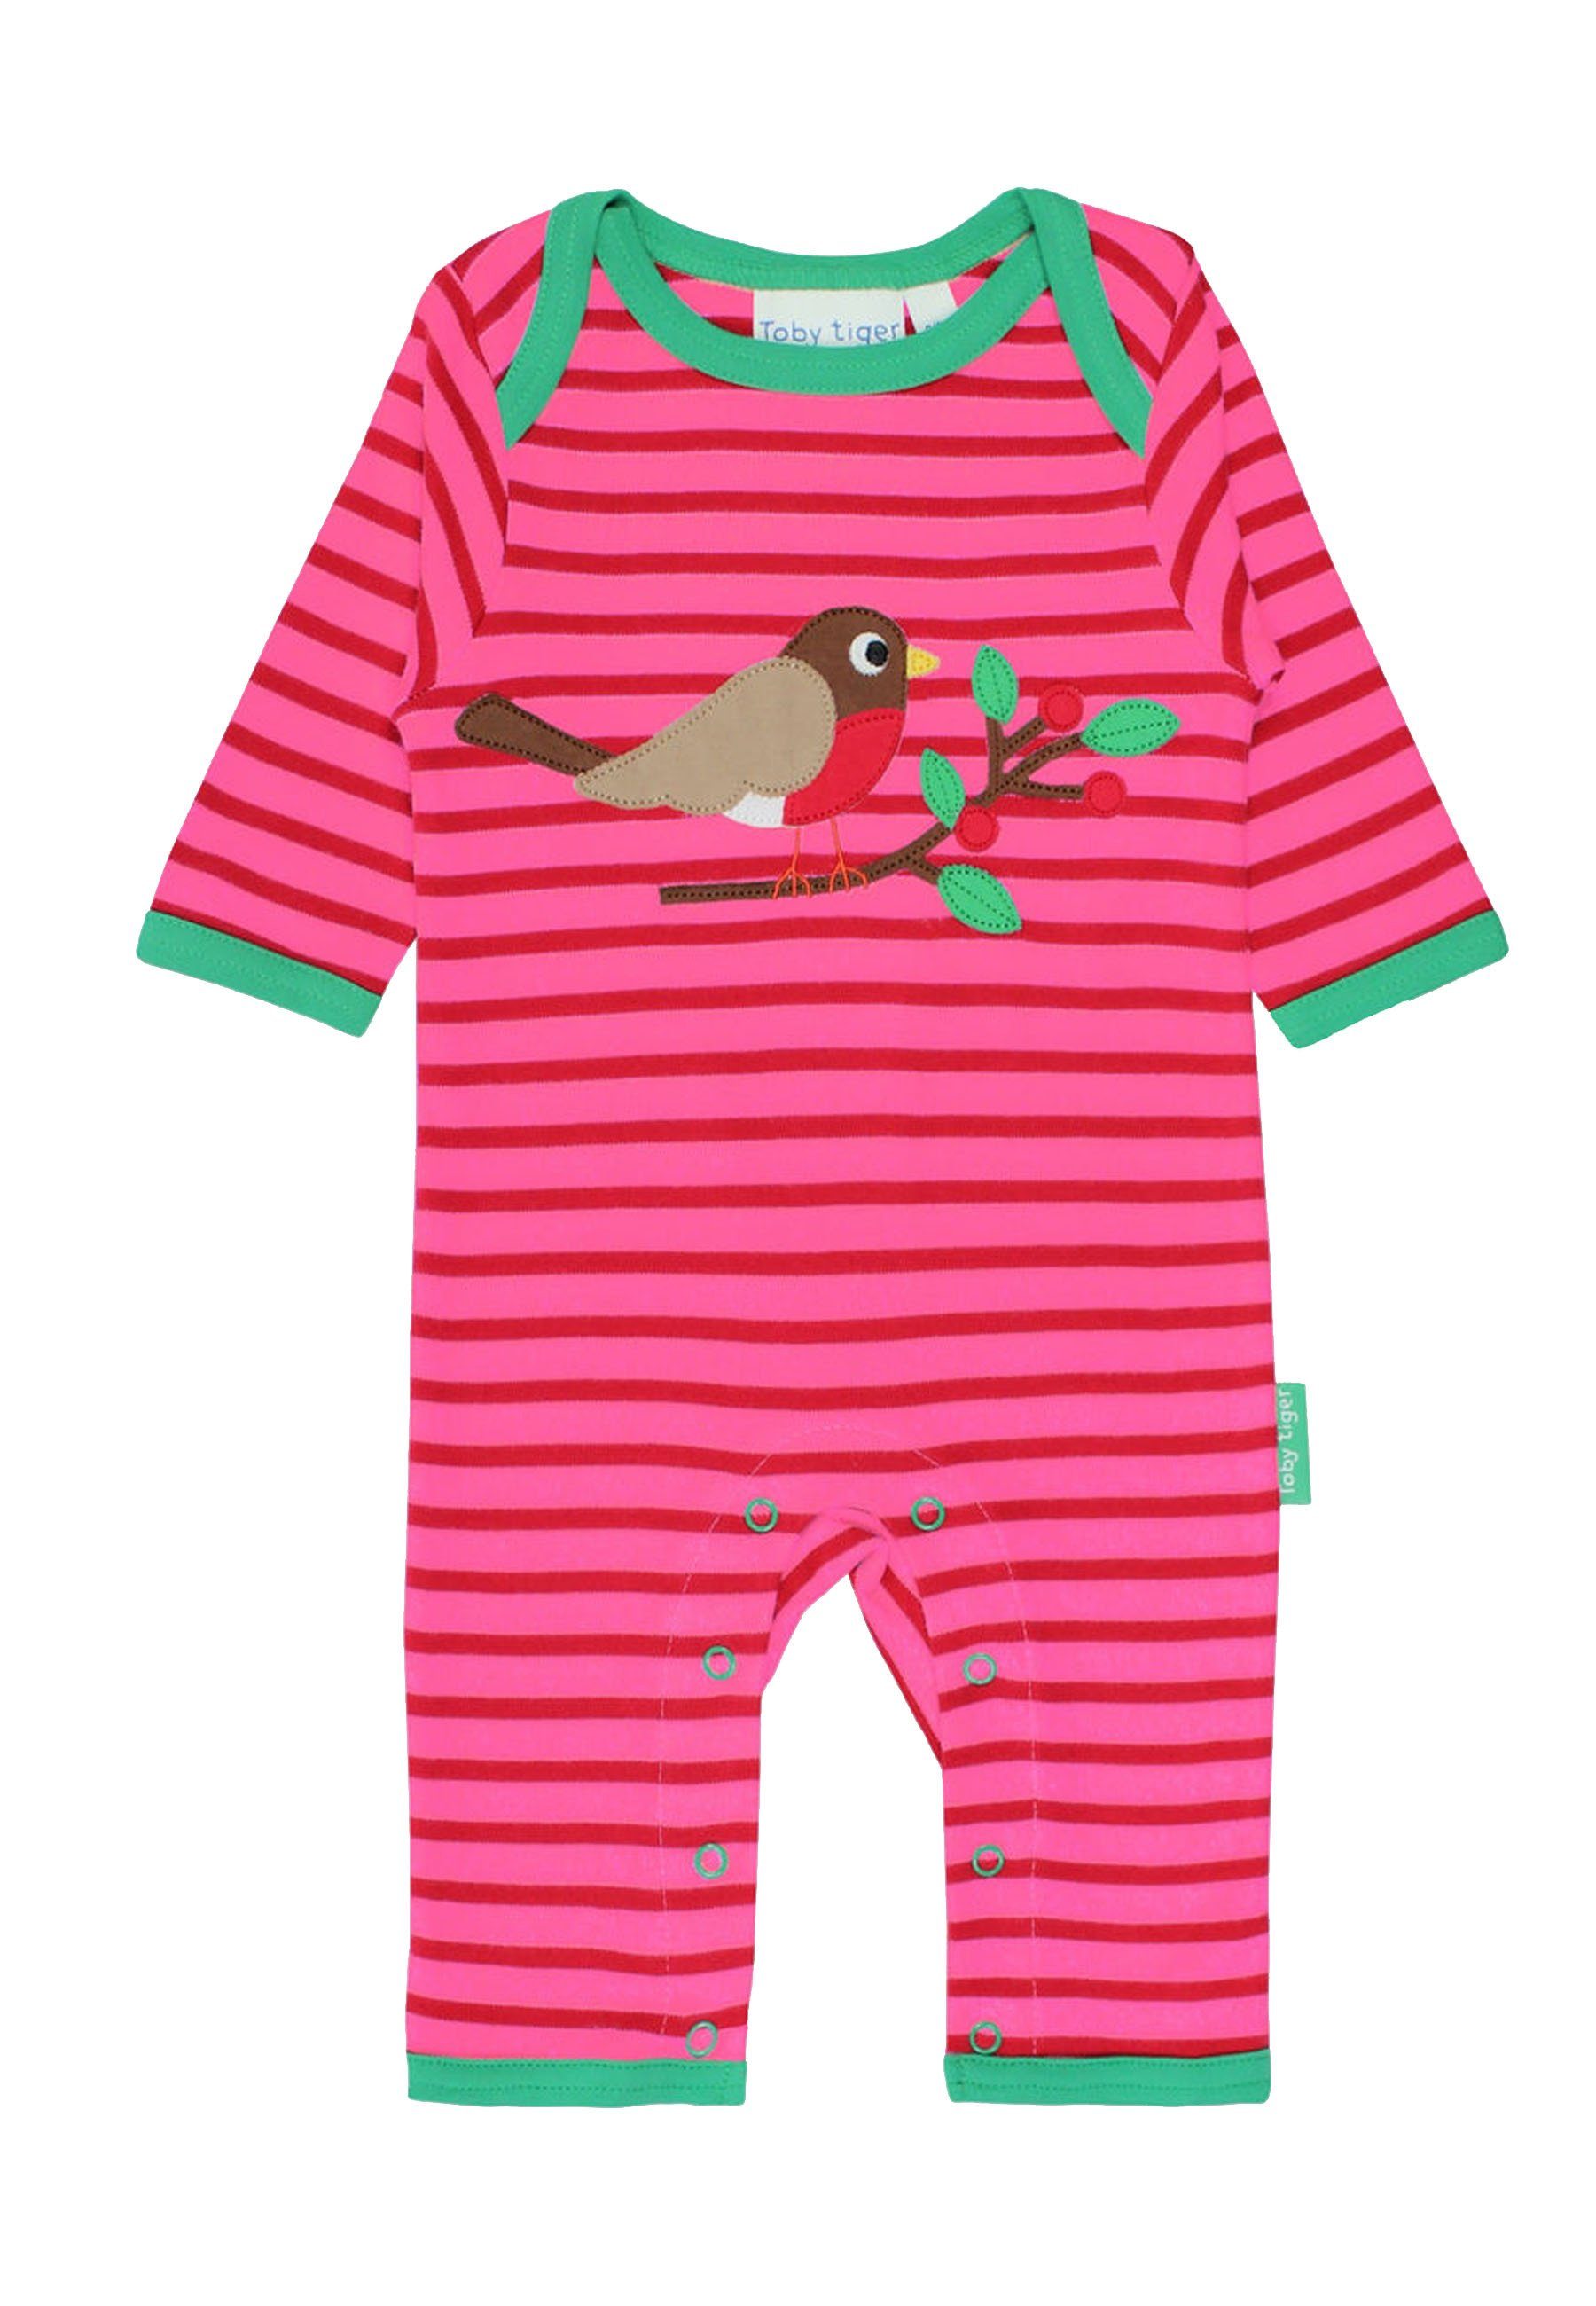 Toby Tiger Schlafanzug Schlafanzug mit Vogel Applikation